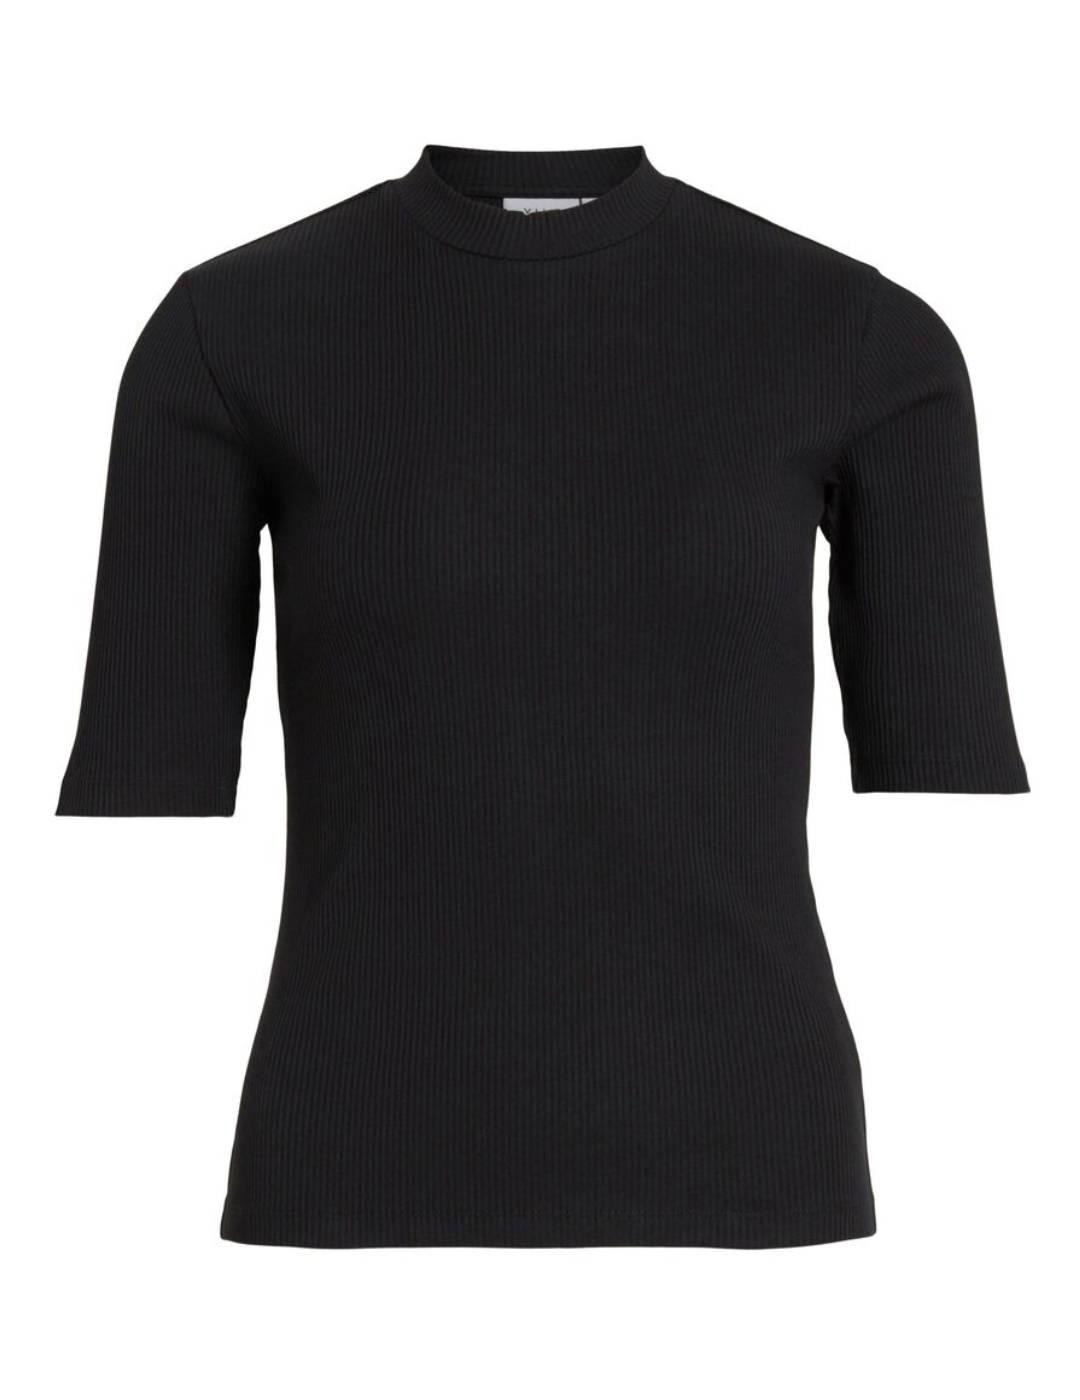 Camiseta Vila Abenia negra de canalé para mujer